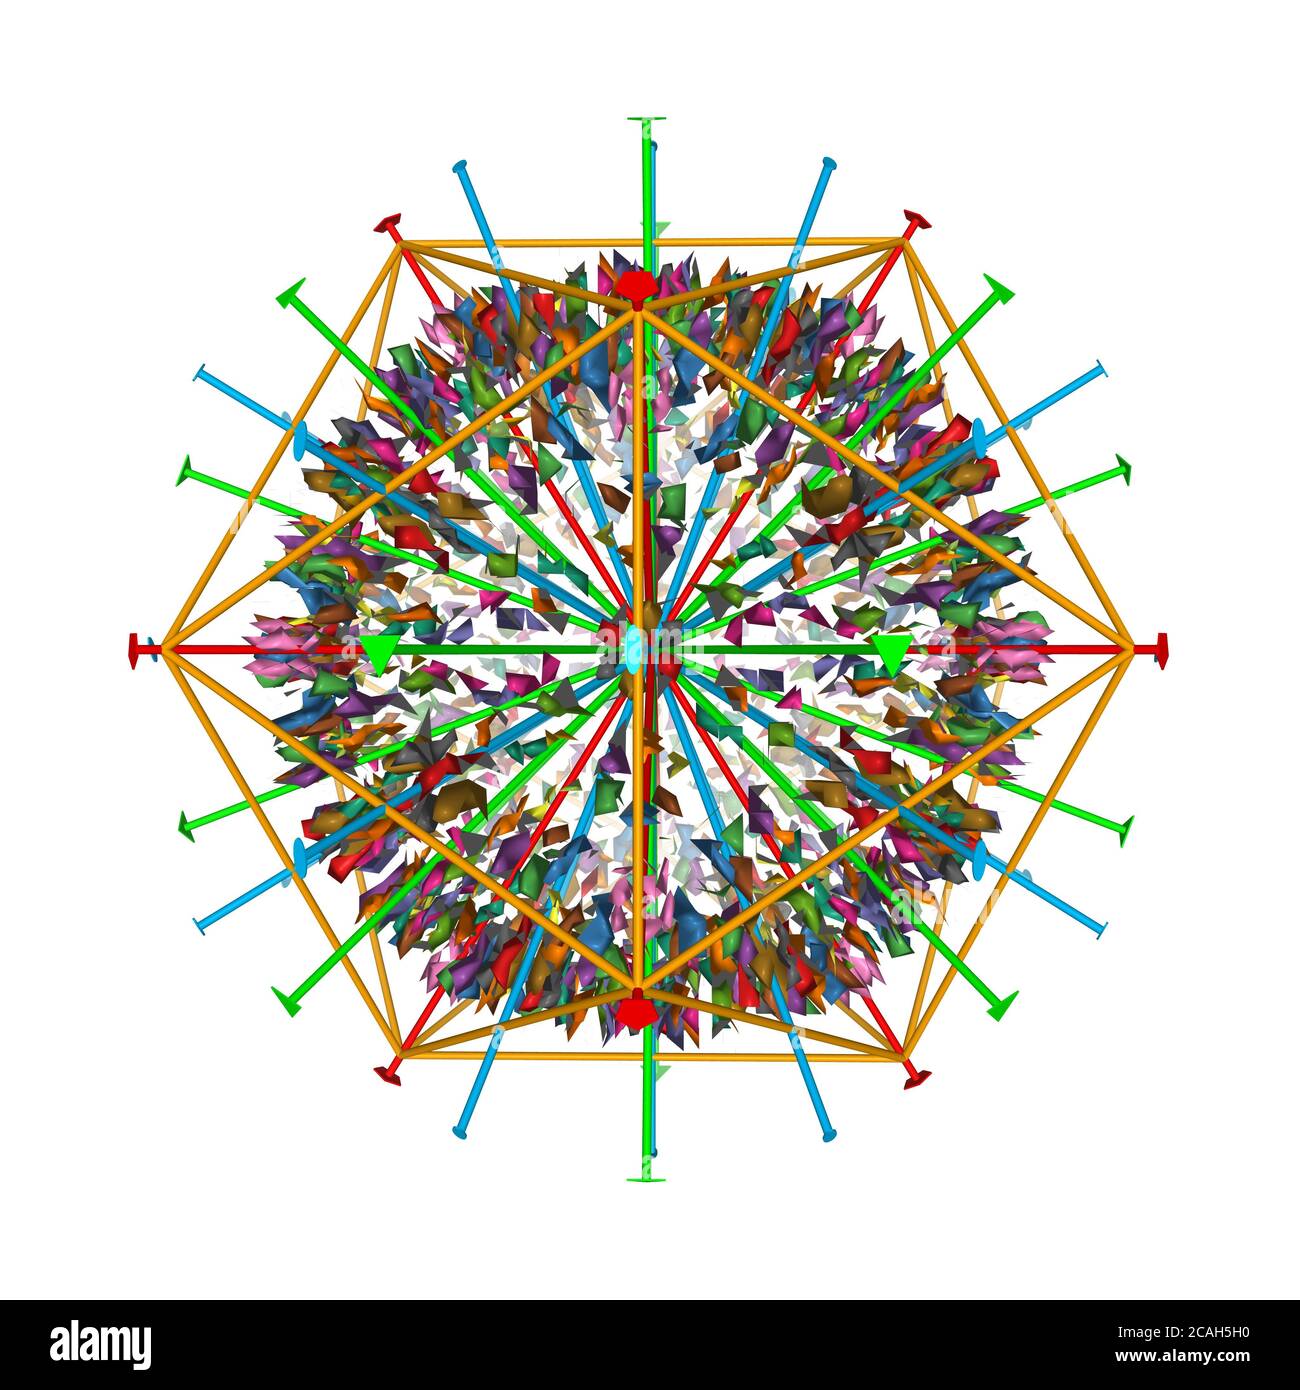 Struttura atomica del capside di herpesvirus 6B umano con simmetria icosaedrica mostrata, modello di superficie gaussiana 3D, sfondo bianco Foto Stock